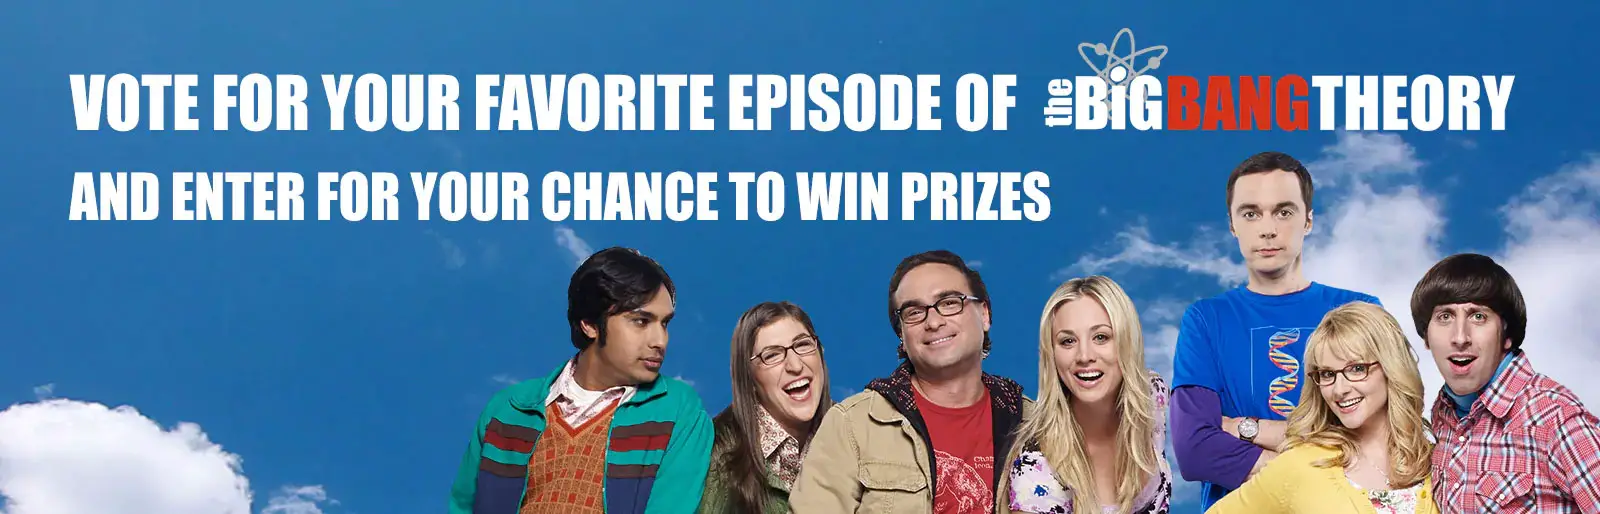 Win Big Bang Theory Prizes